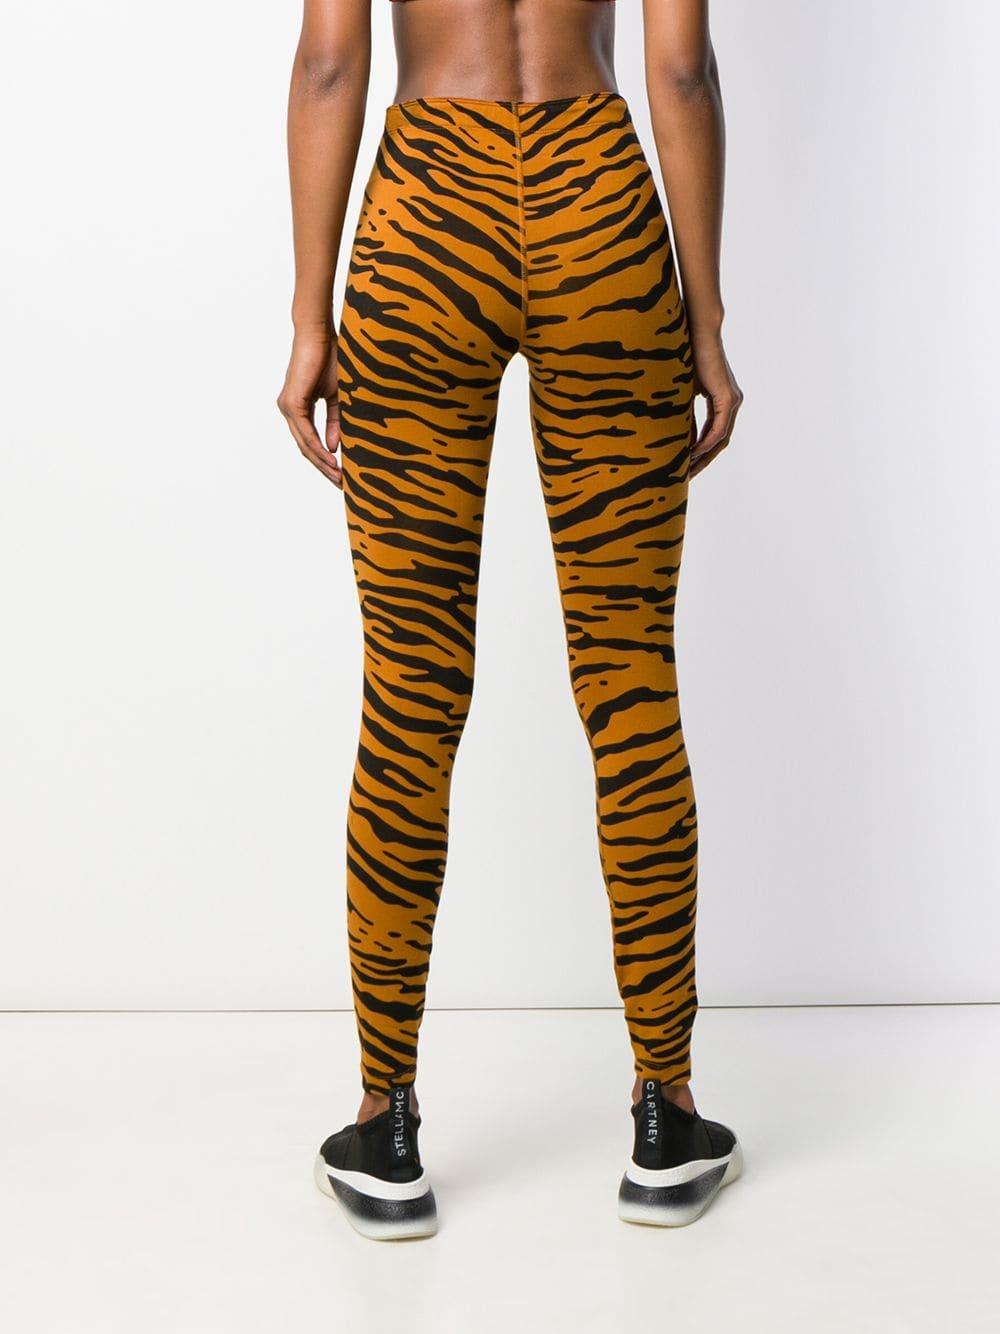 Tiger Print leggings